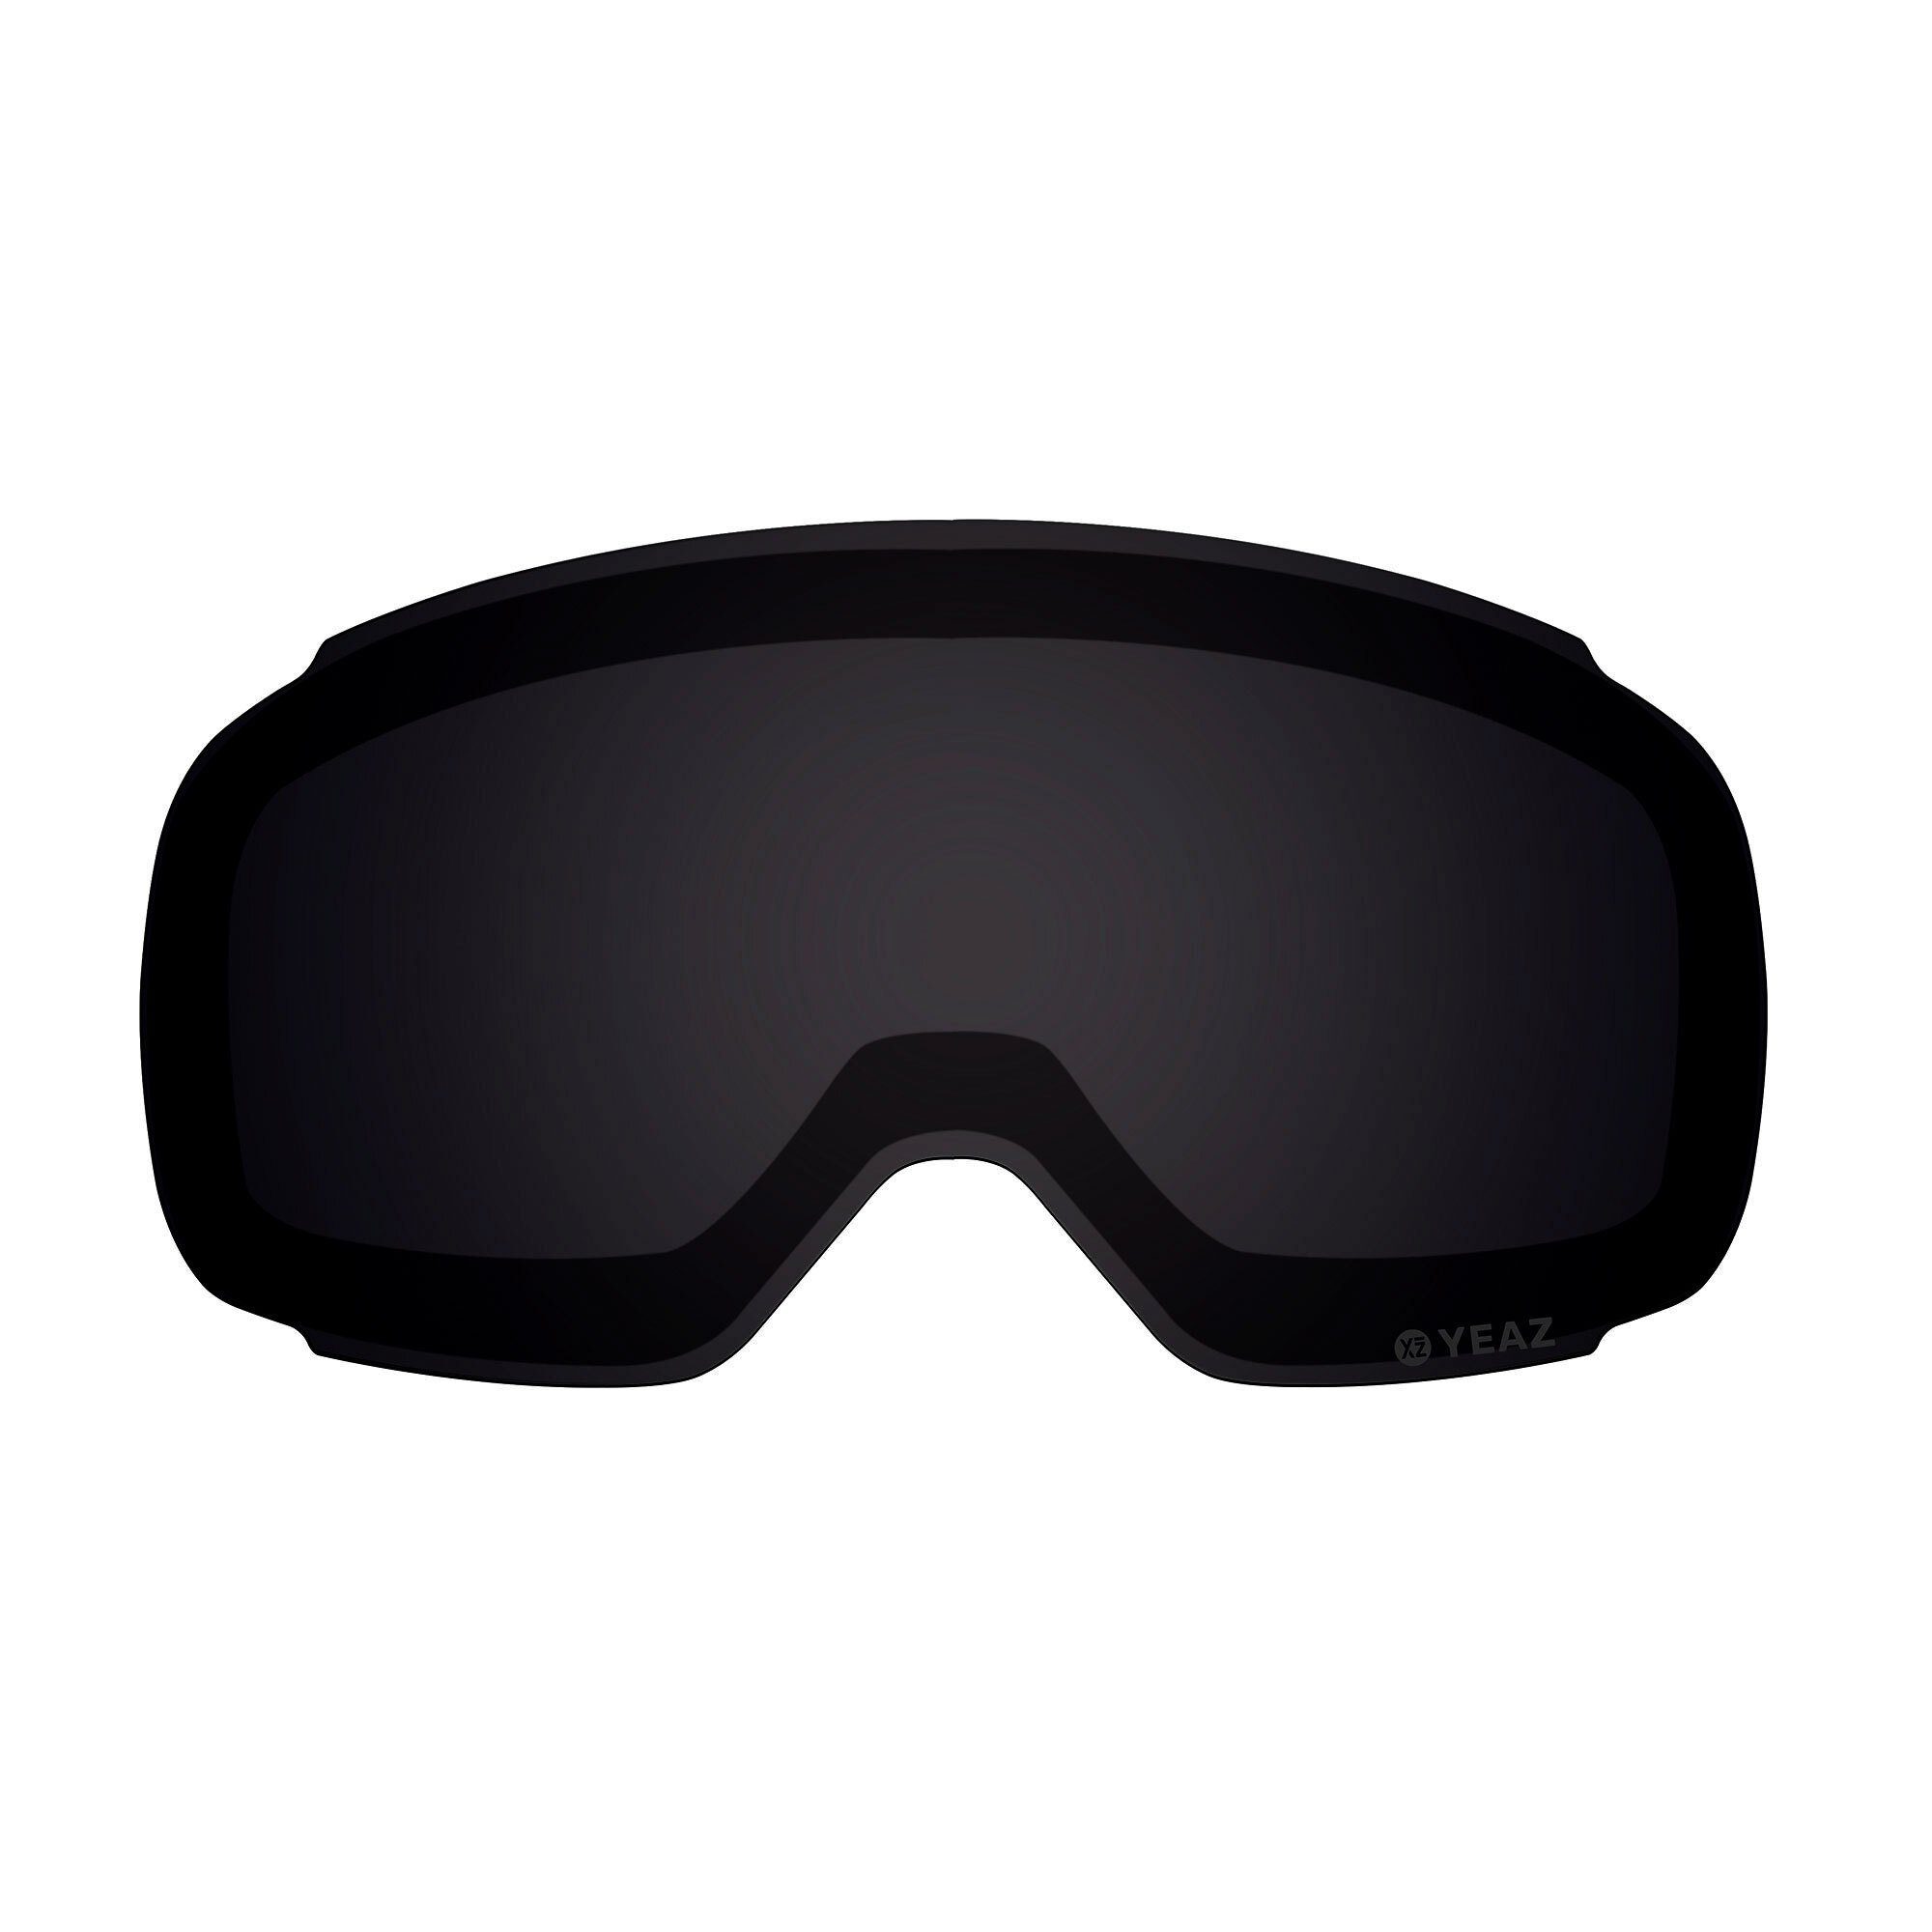 Wechselglas wechselglas Skibrille ski- snowboardbrille, Magnetisches für YEAZ schwarz TWEAK-X